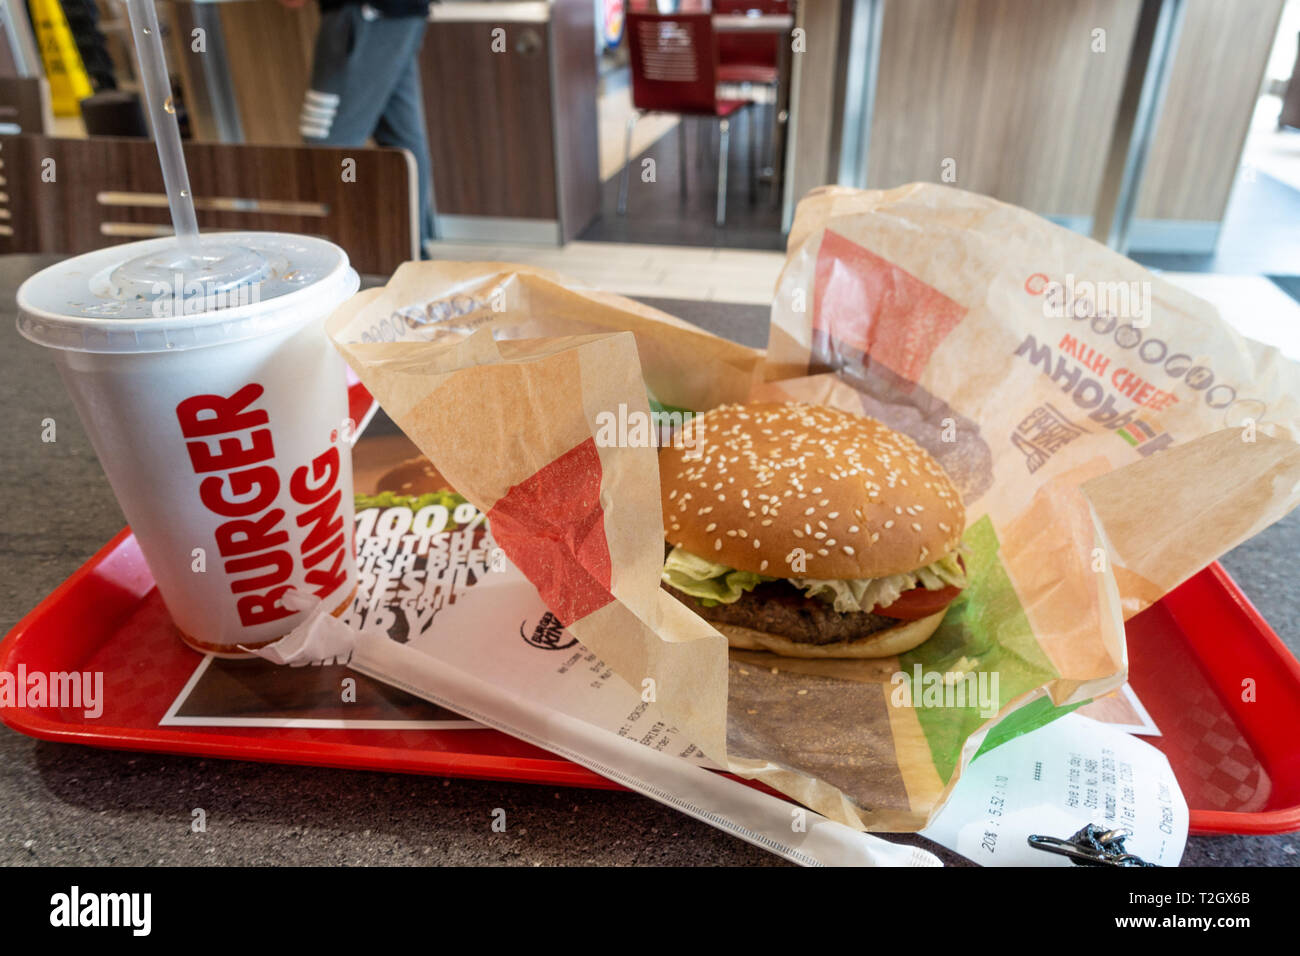 Un whopper meal acquistati presso un Burger King e un ristorante fast food. Un whopper burger e una tazza di soda sono visti su un vassoio su un tavolo. Foto Stock